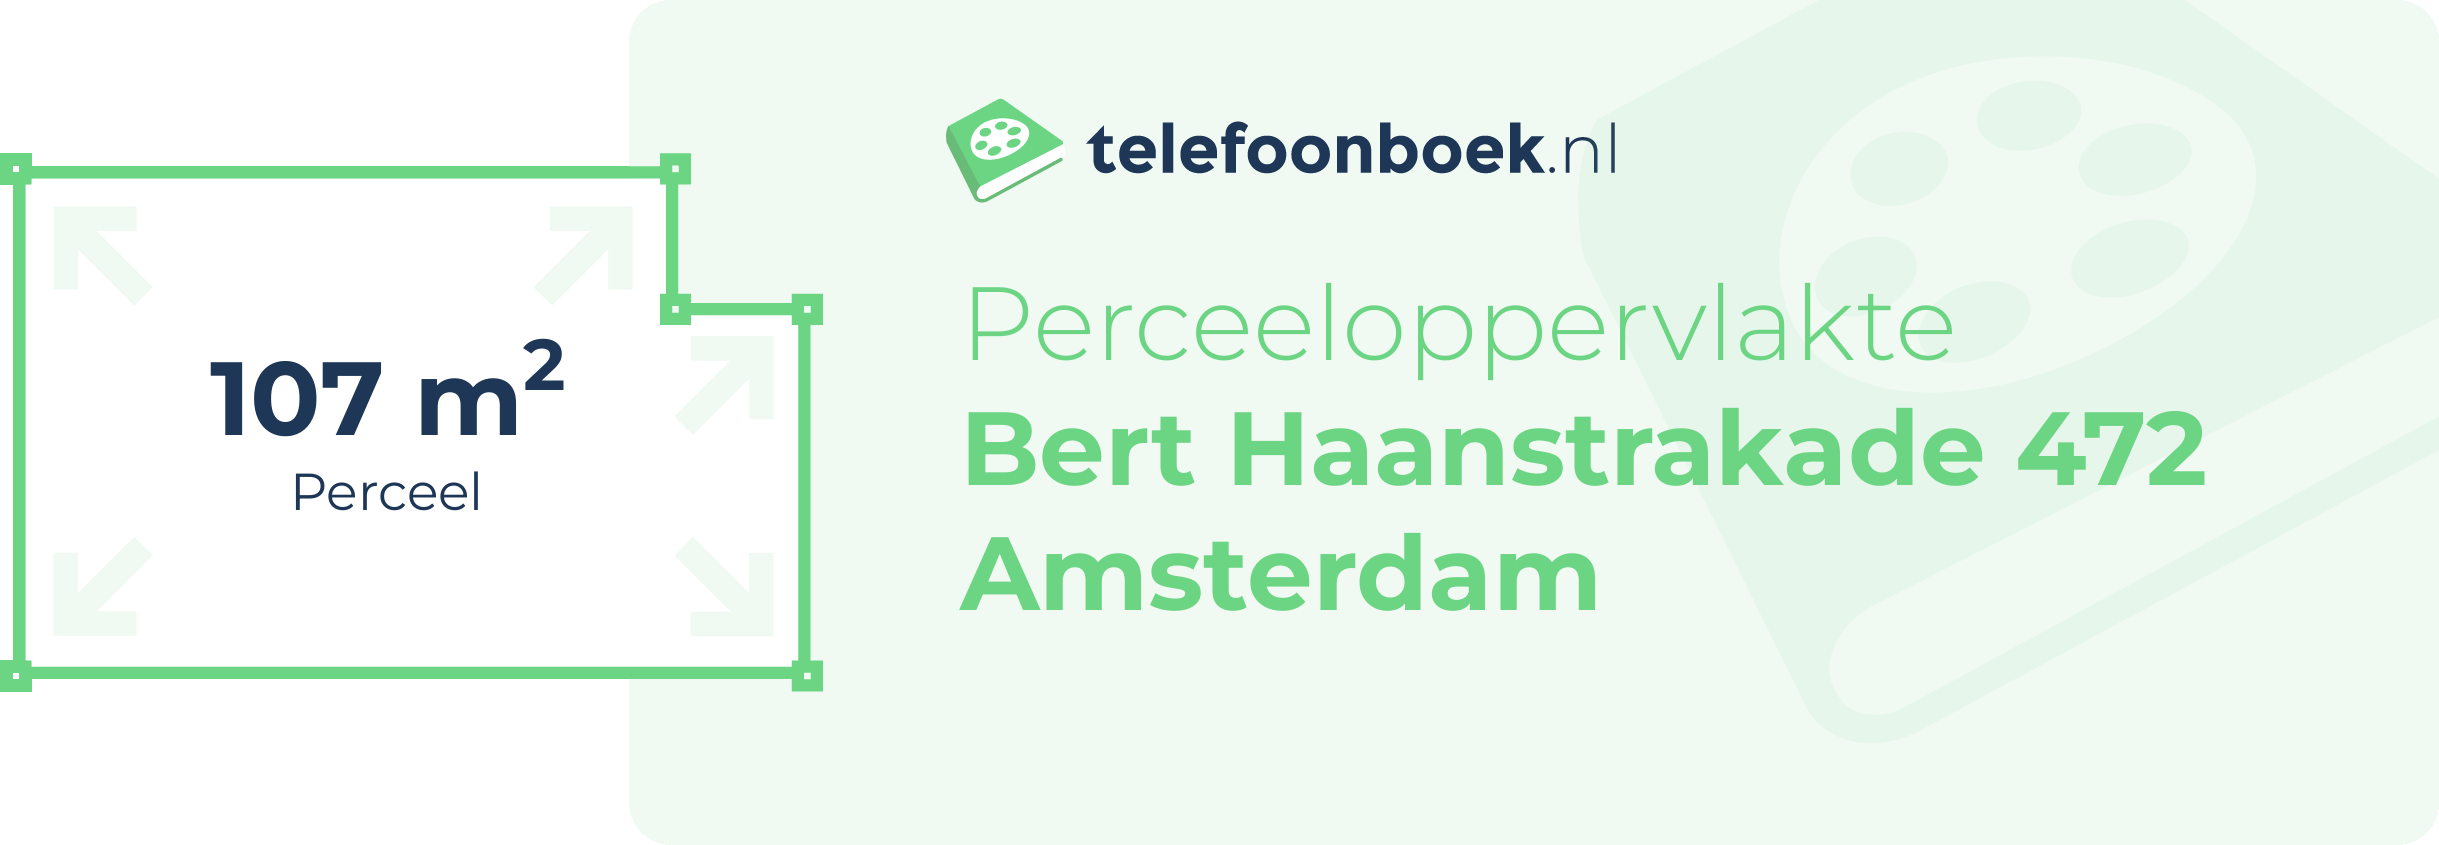 Perceeloppervlakte Bert Haanstrakade 472 Amsterdam